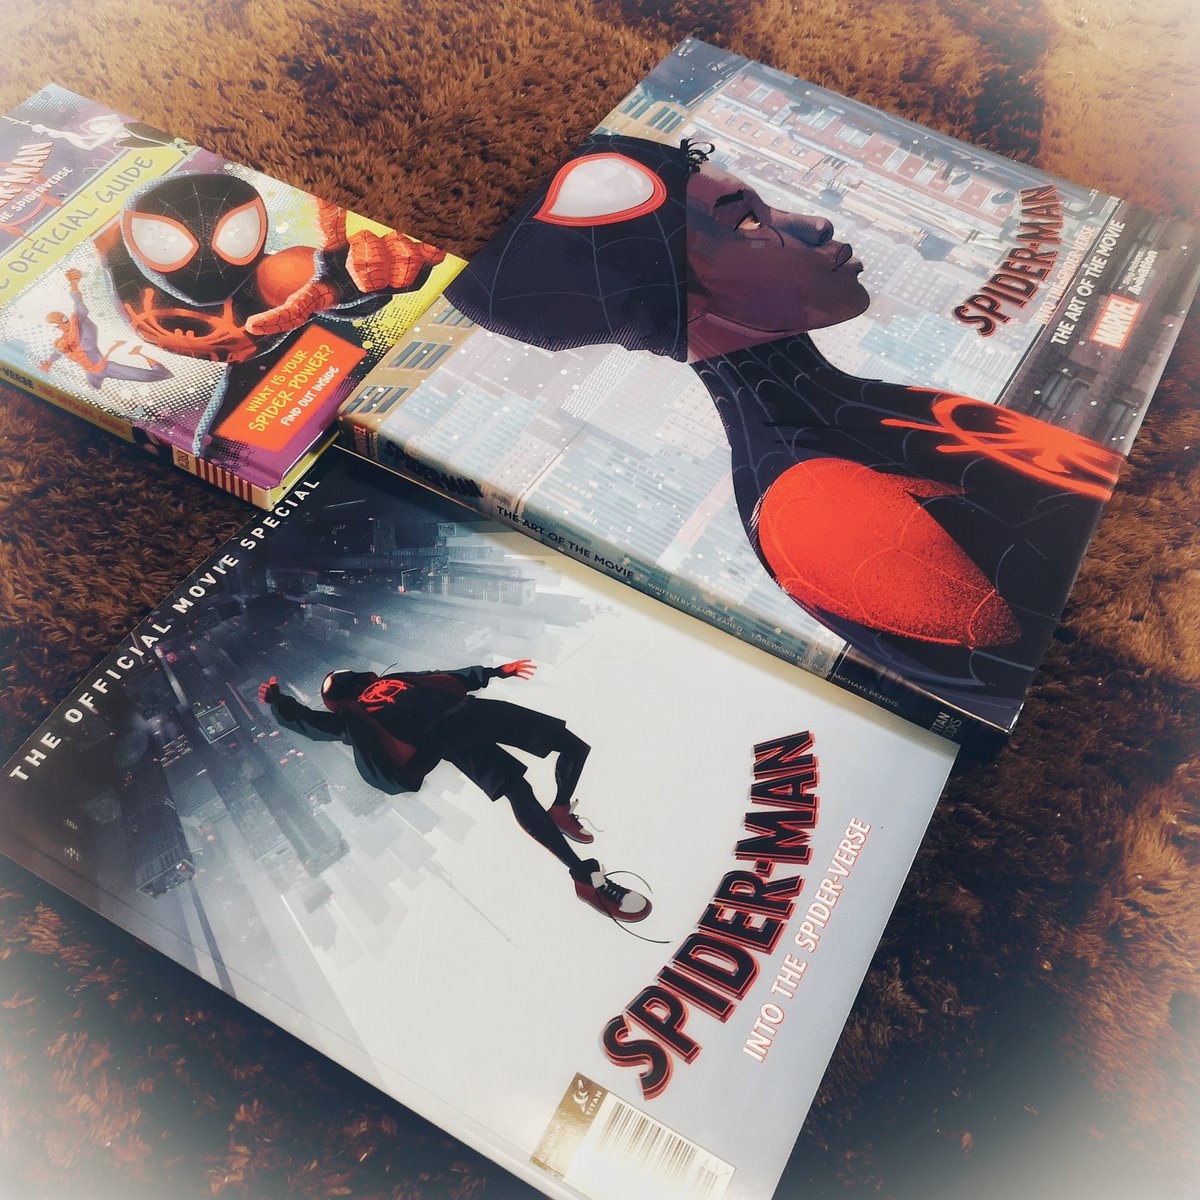 Mizuki Auf Twitter 映画 スパイダーマン スパイダーバース 関連本を主にペニーちゃんのために購入 表情集が最高です Art Of の美味しいとこ抜粋したのがofficial Movie Specialなのでこっちだけでもよいかも グゥエンやペニーは両方に収録 オフィシャル